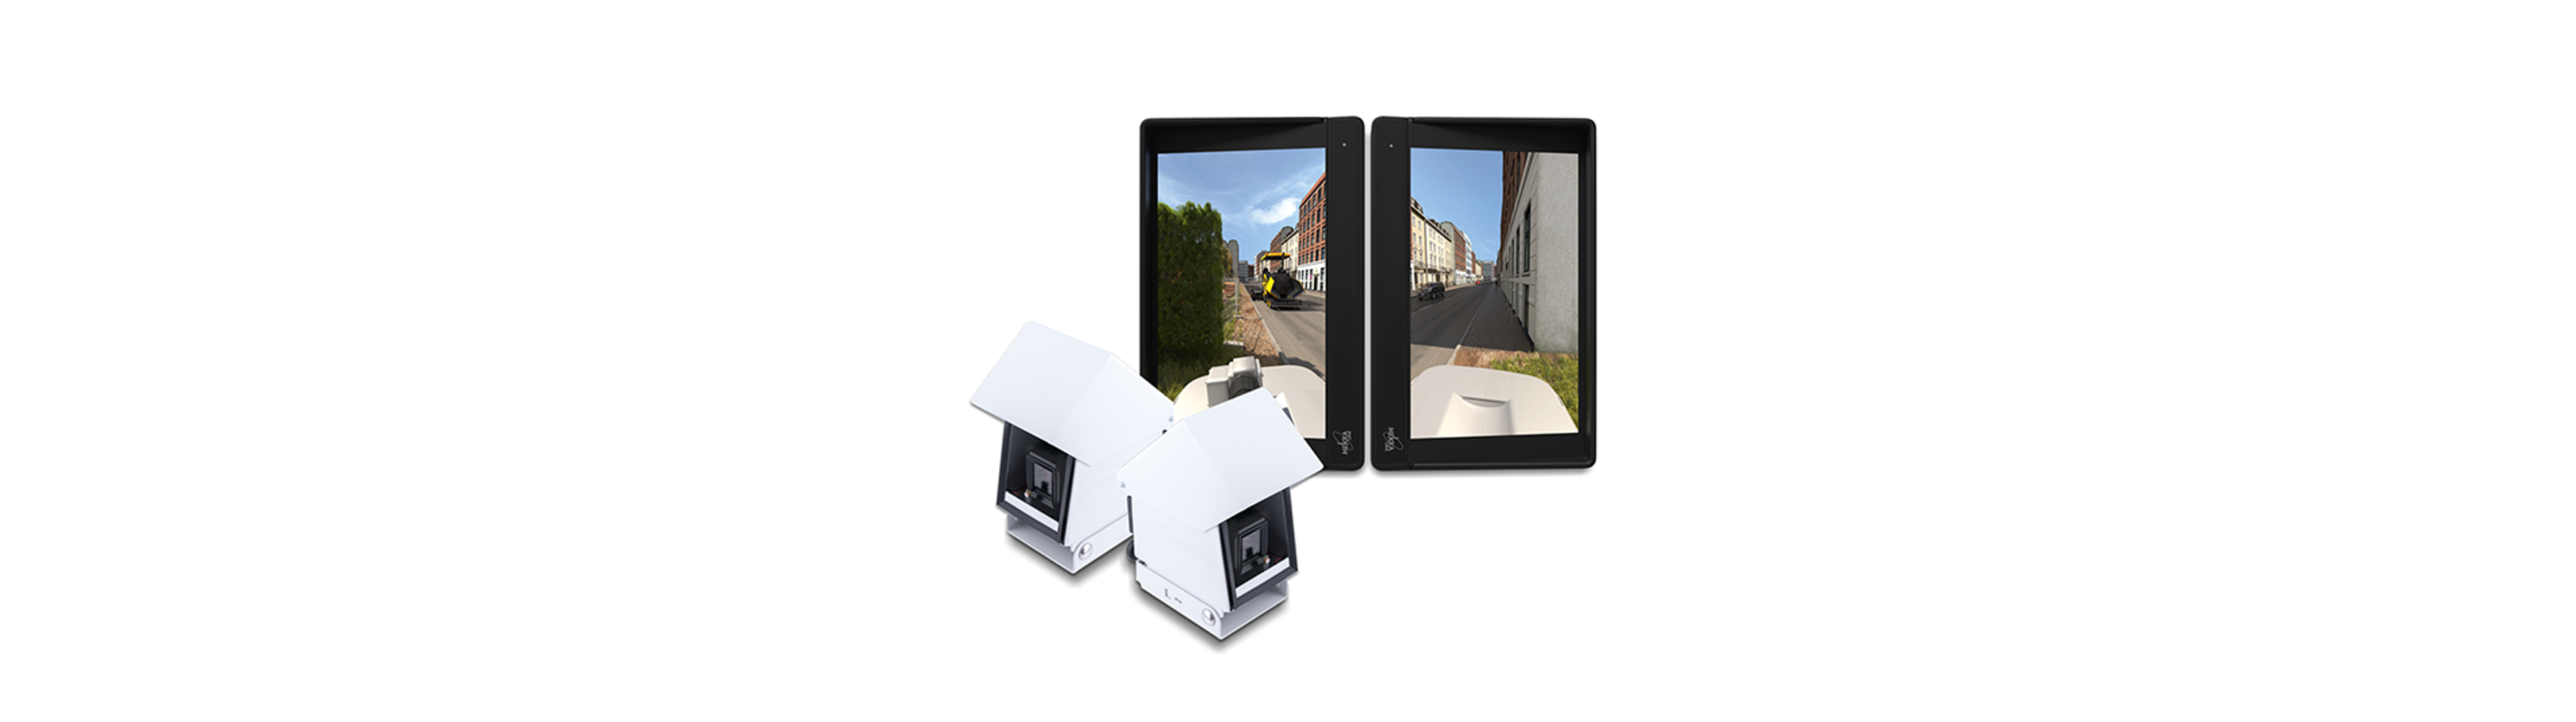 QKMS professional zeigt zwei Kameras in Shutterboxen und zwei Monitore